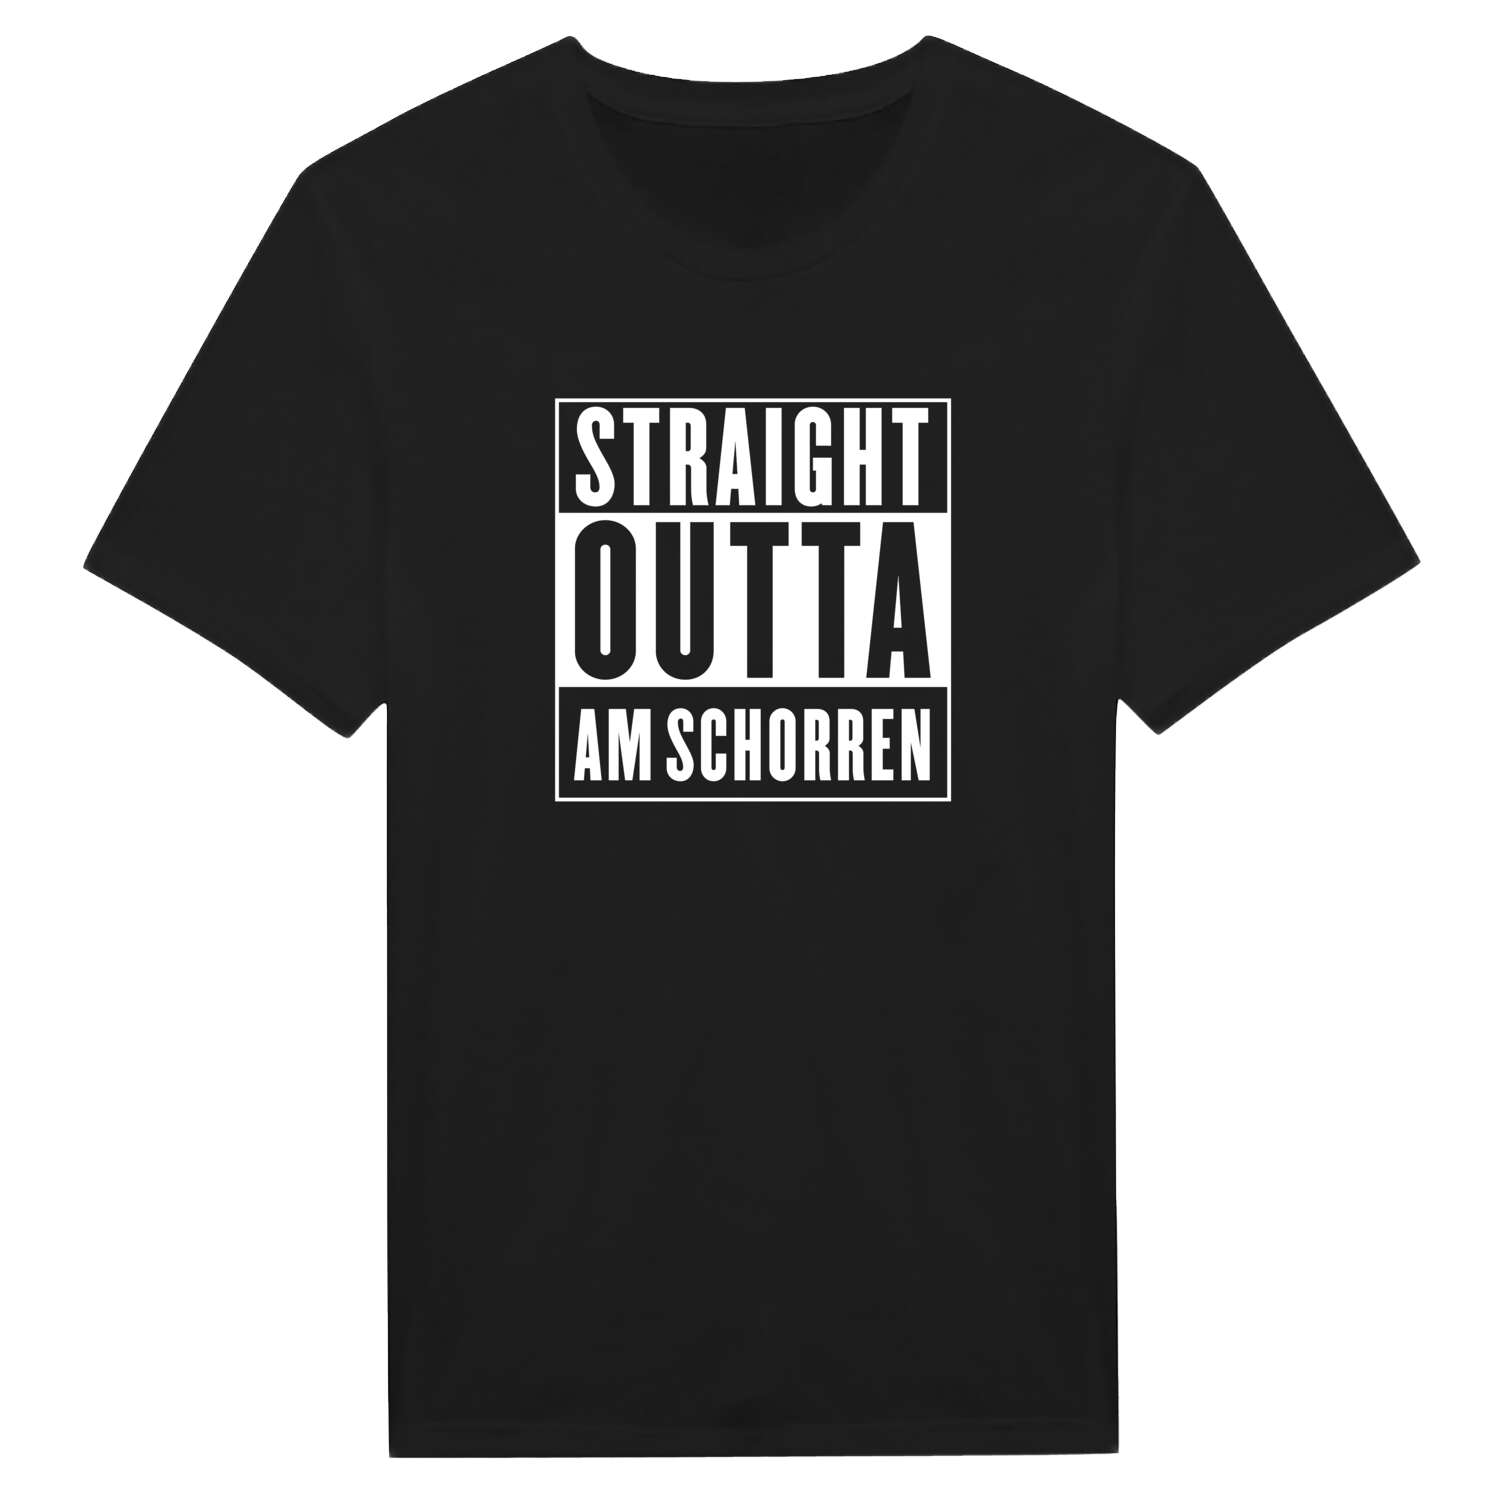 Am Schorren T-Shirt »Straight Outta«